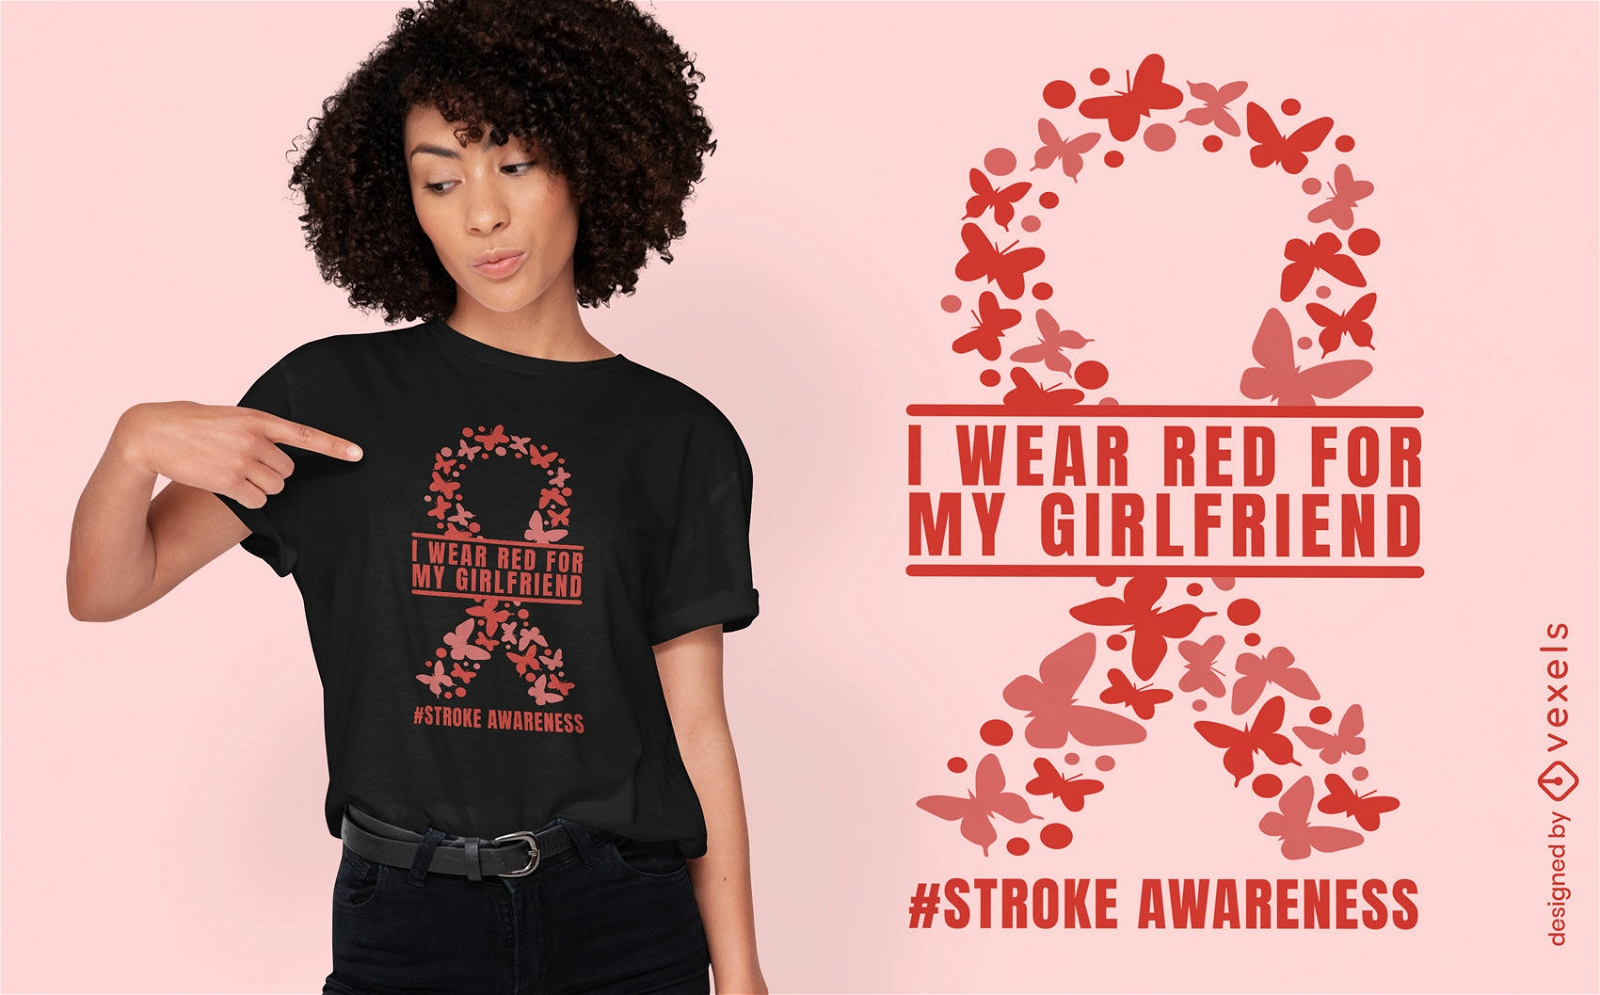 Stroke awareness girlfriend t-shirt design 